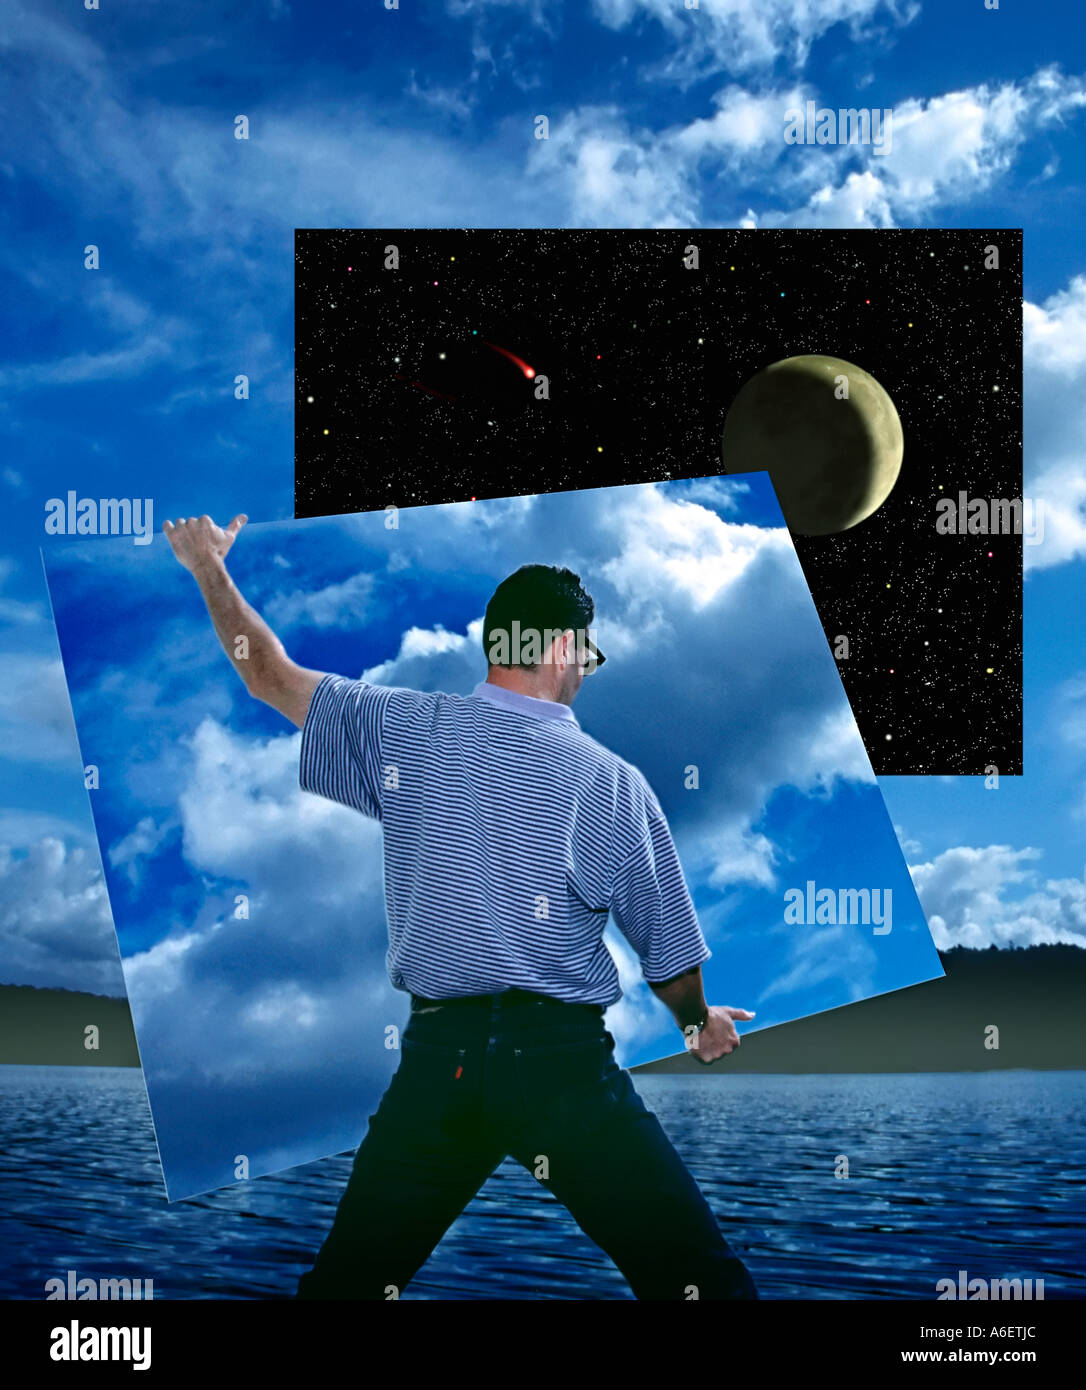 Fotografica digitale illustrazione che mostra la persona sezione Rimozione del cielo diurno per rivelare il cielo di notte Foto Stock